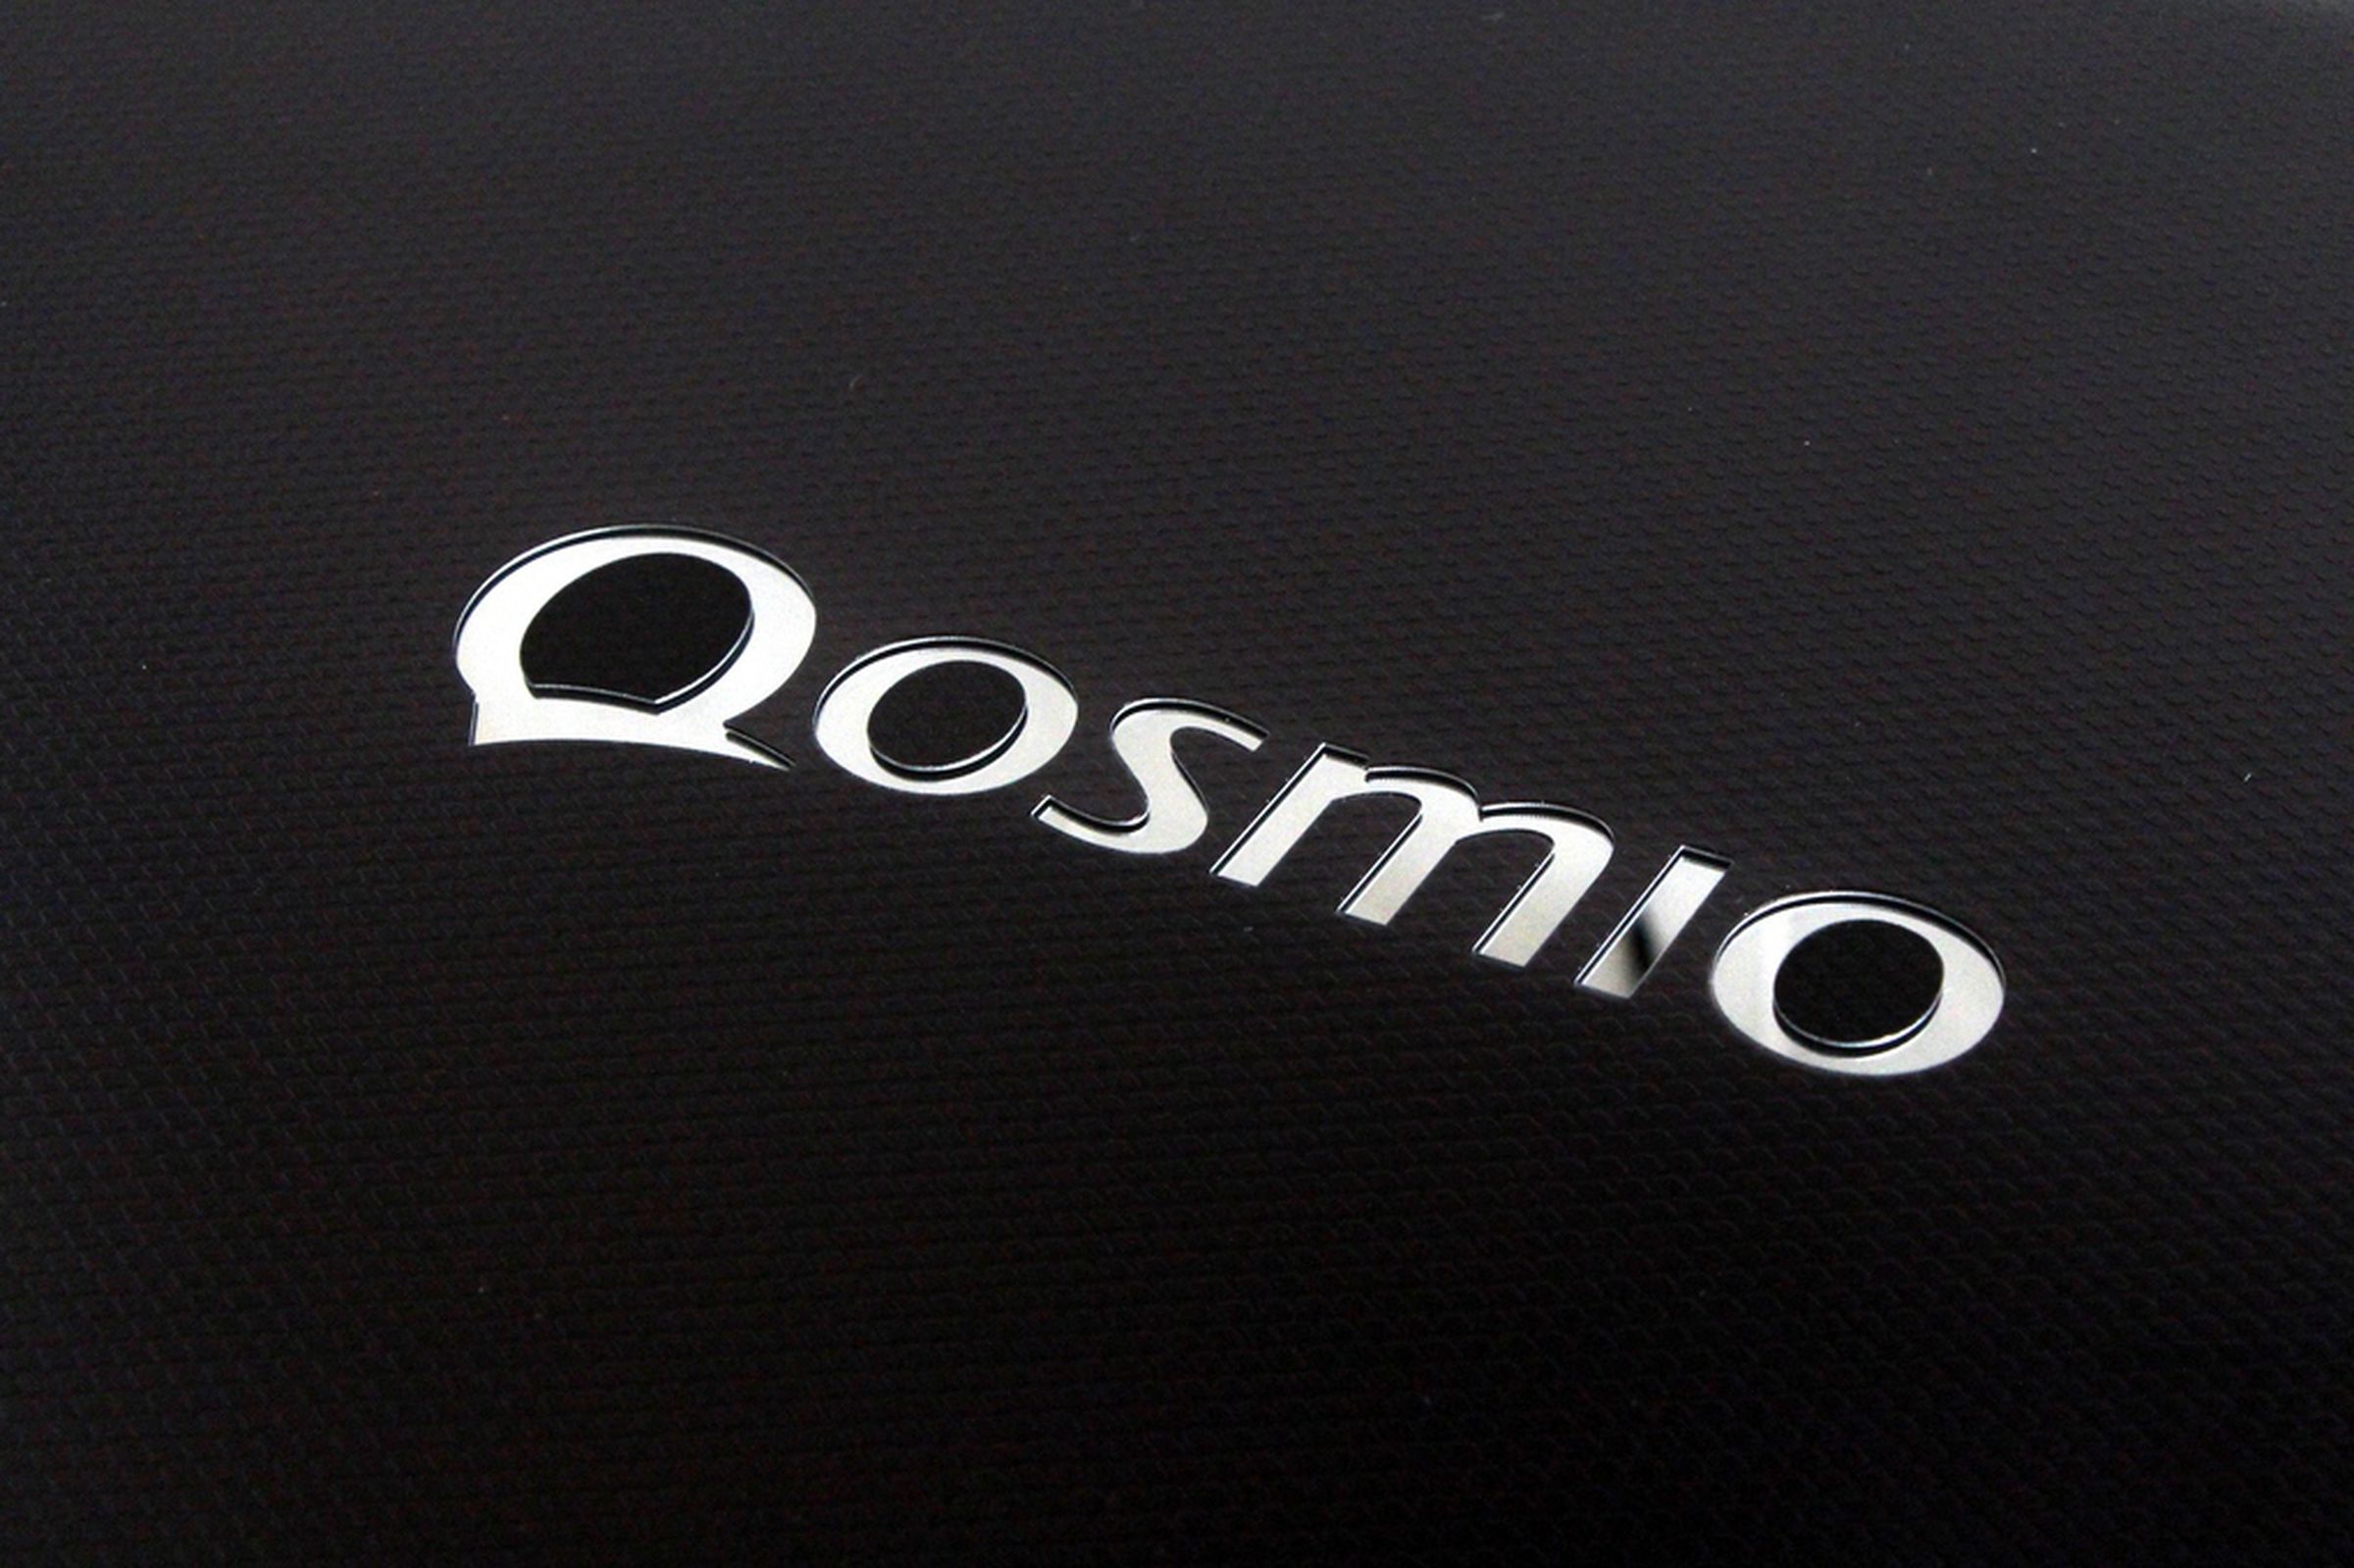 Toshiba Qosmio X870 review pictures